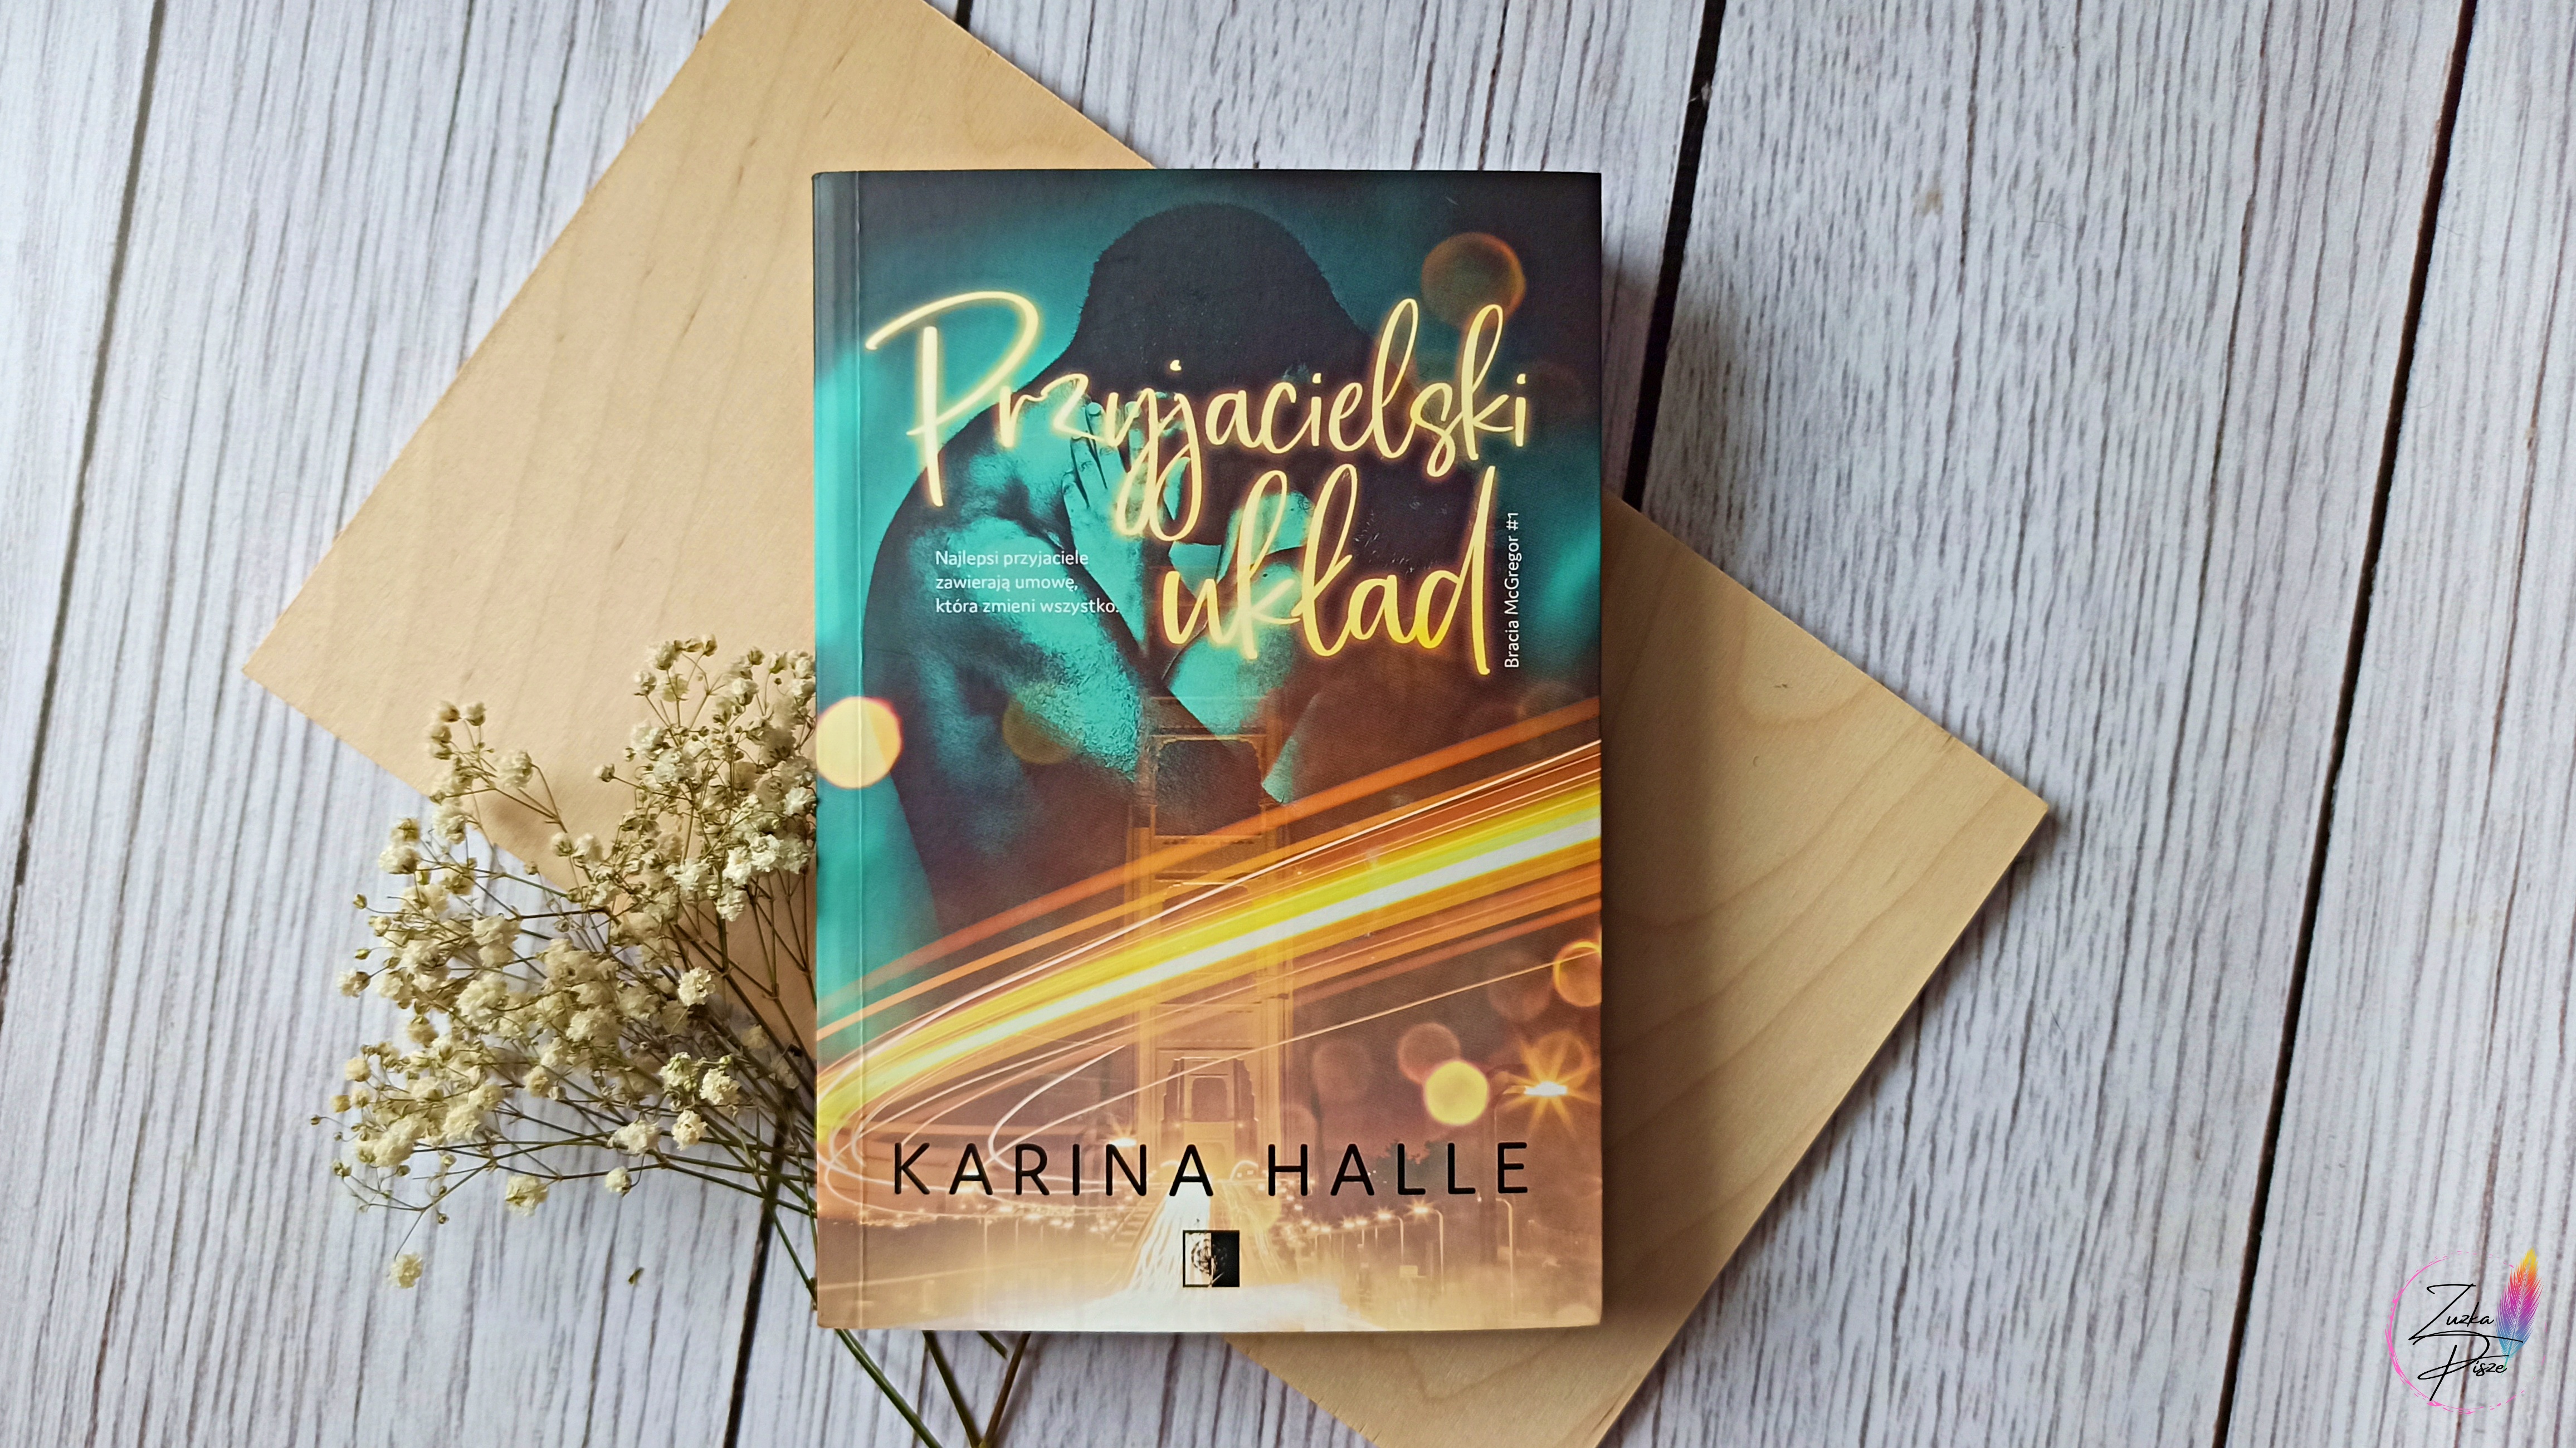 Karina Halle "Przyjacielski układ" - recenzja książki